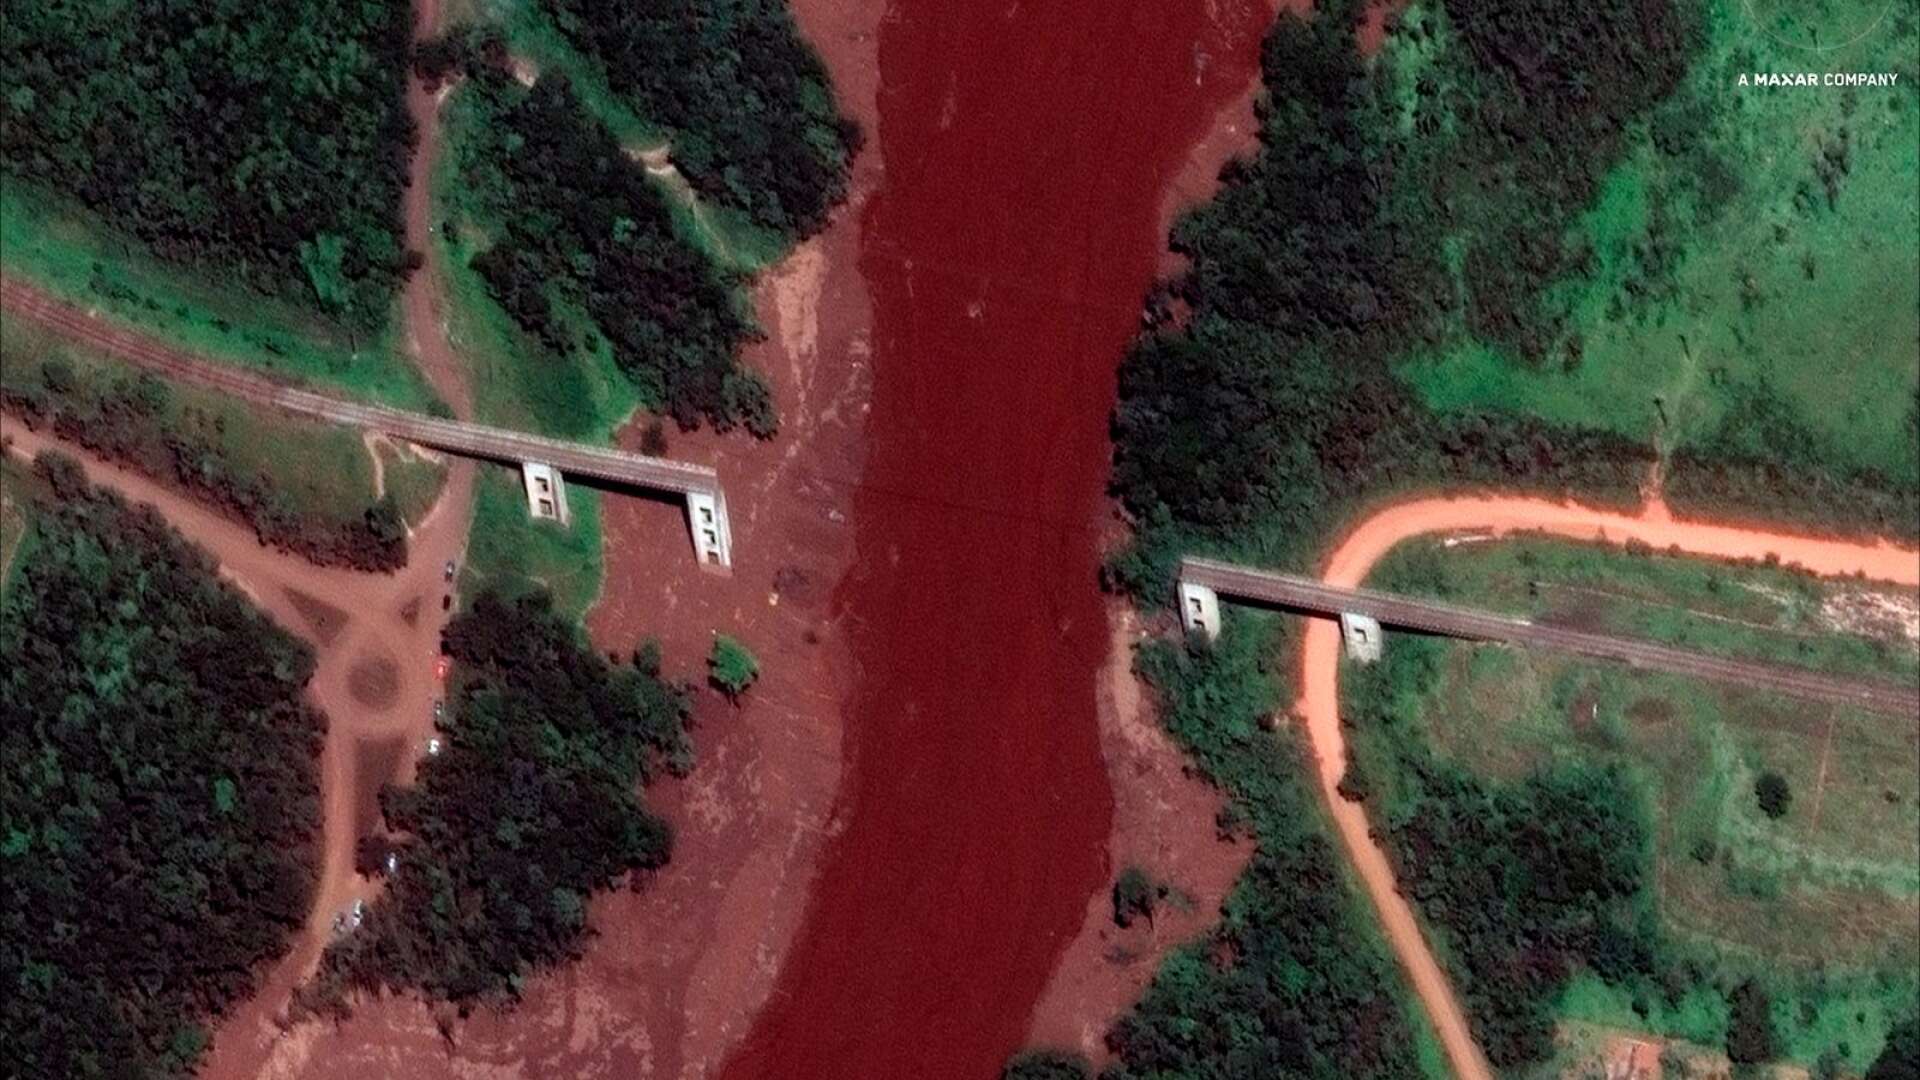 Dammen i Brumadinho var inte en vattenkraftsdamm utan en damm för gruvavfall. Gruvdriften hade upphört och dammen var åldrad när den brast den 25 januari i år, skriver John Hedlund. 